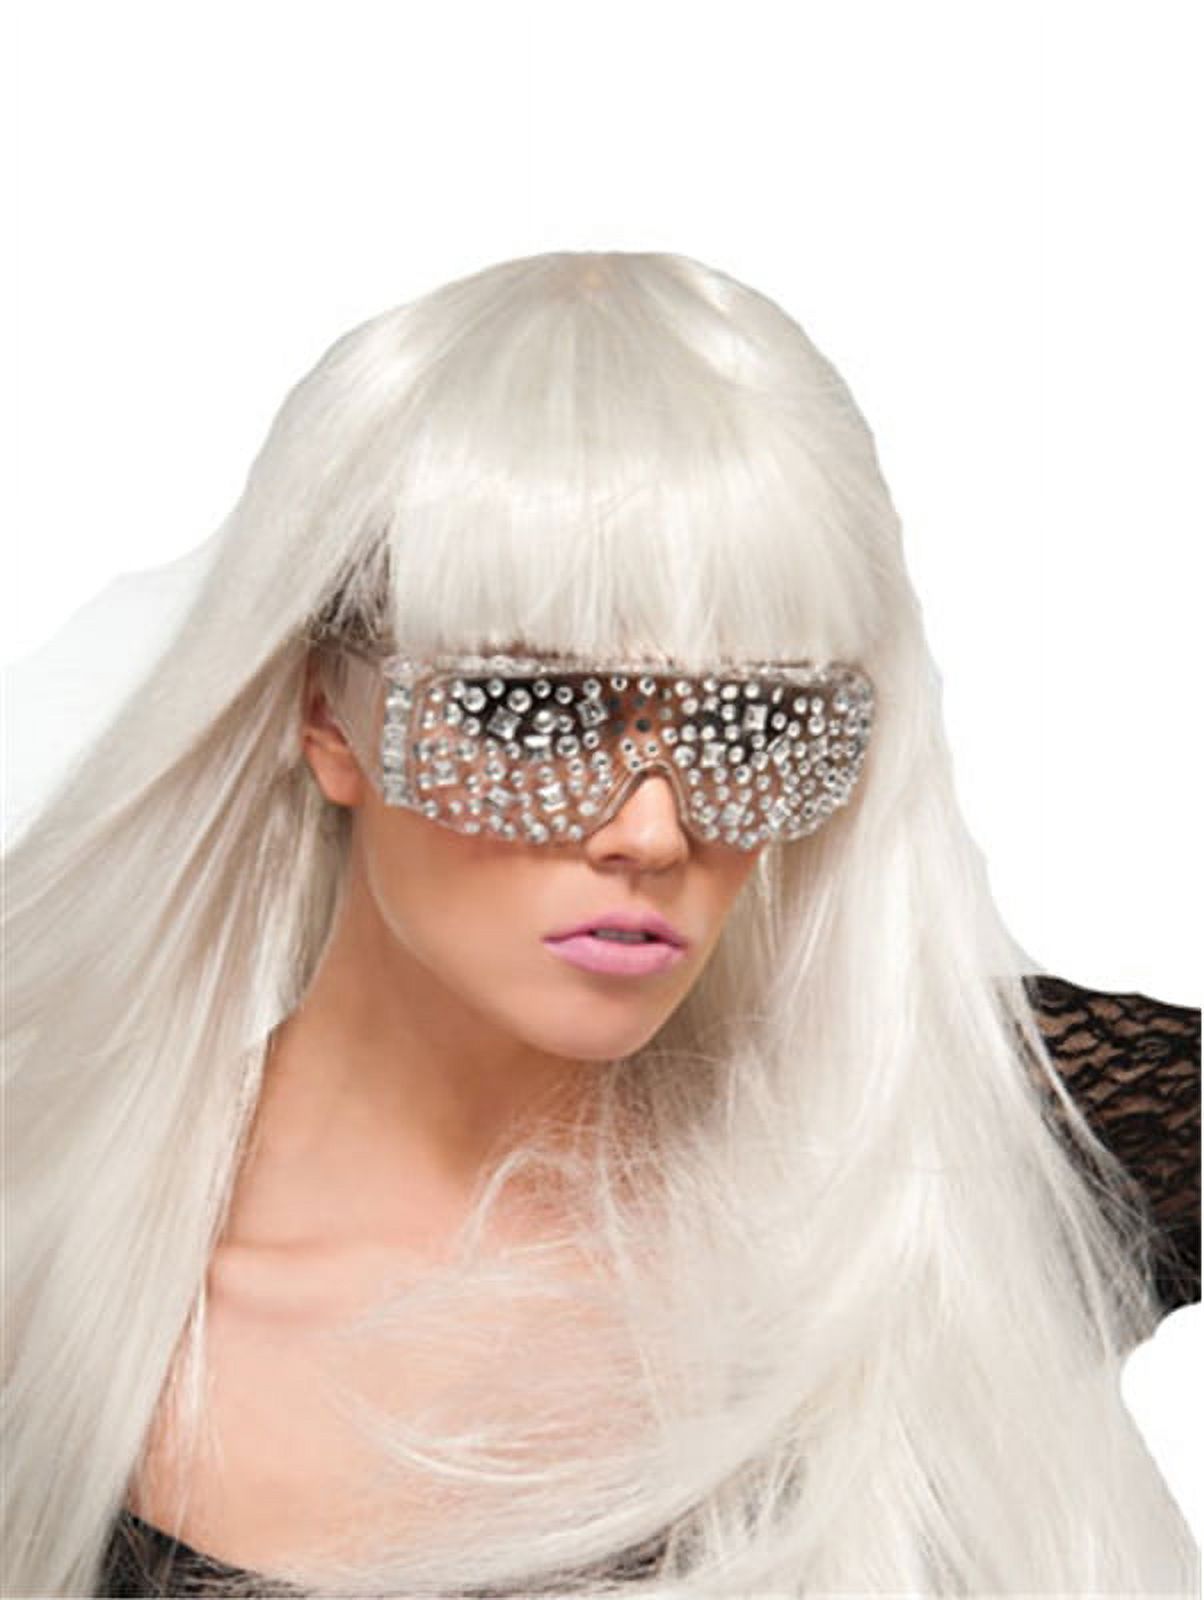 Lady Gaga Jeweled Glasses - image 1 of 1